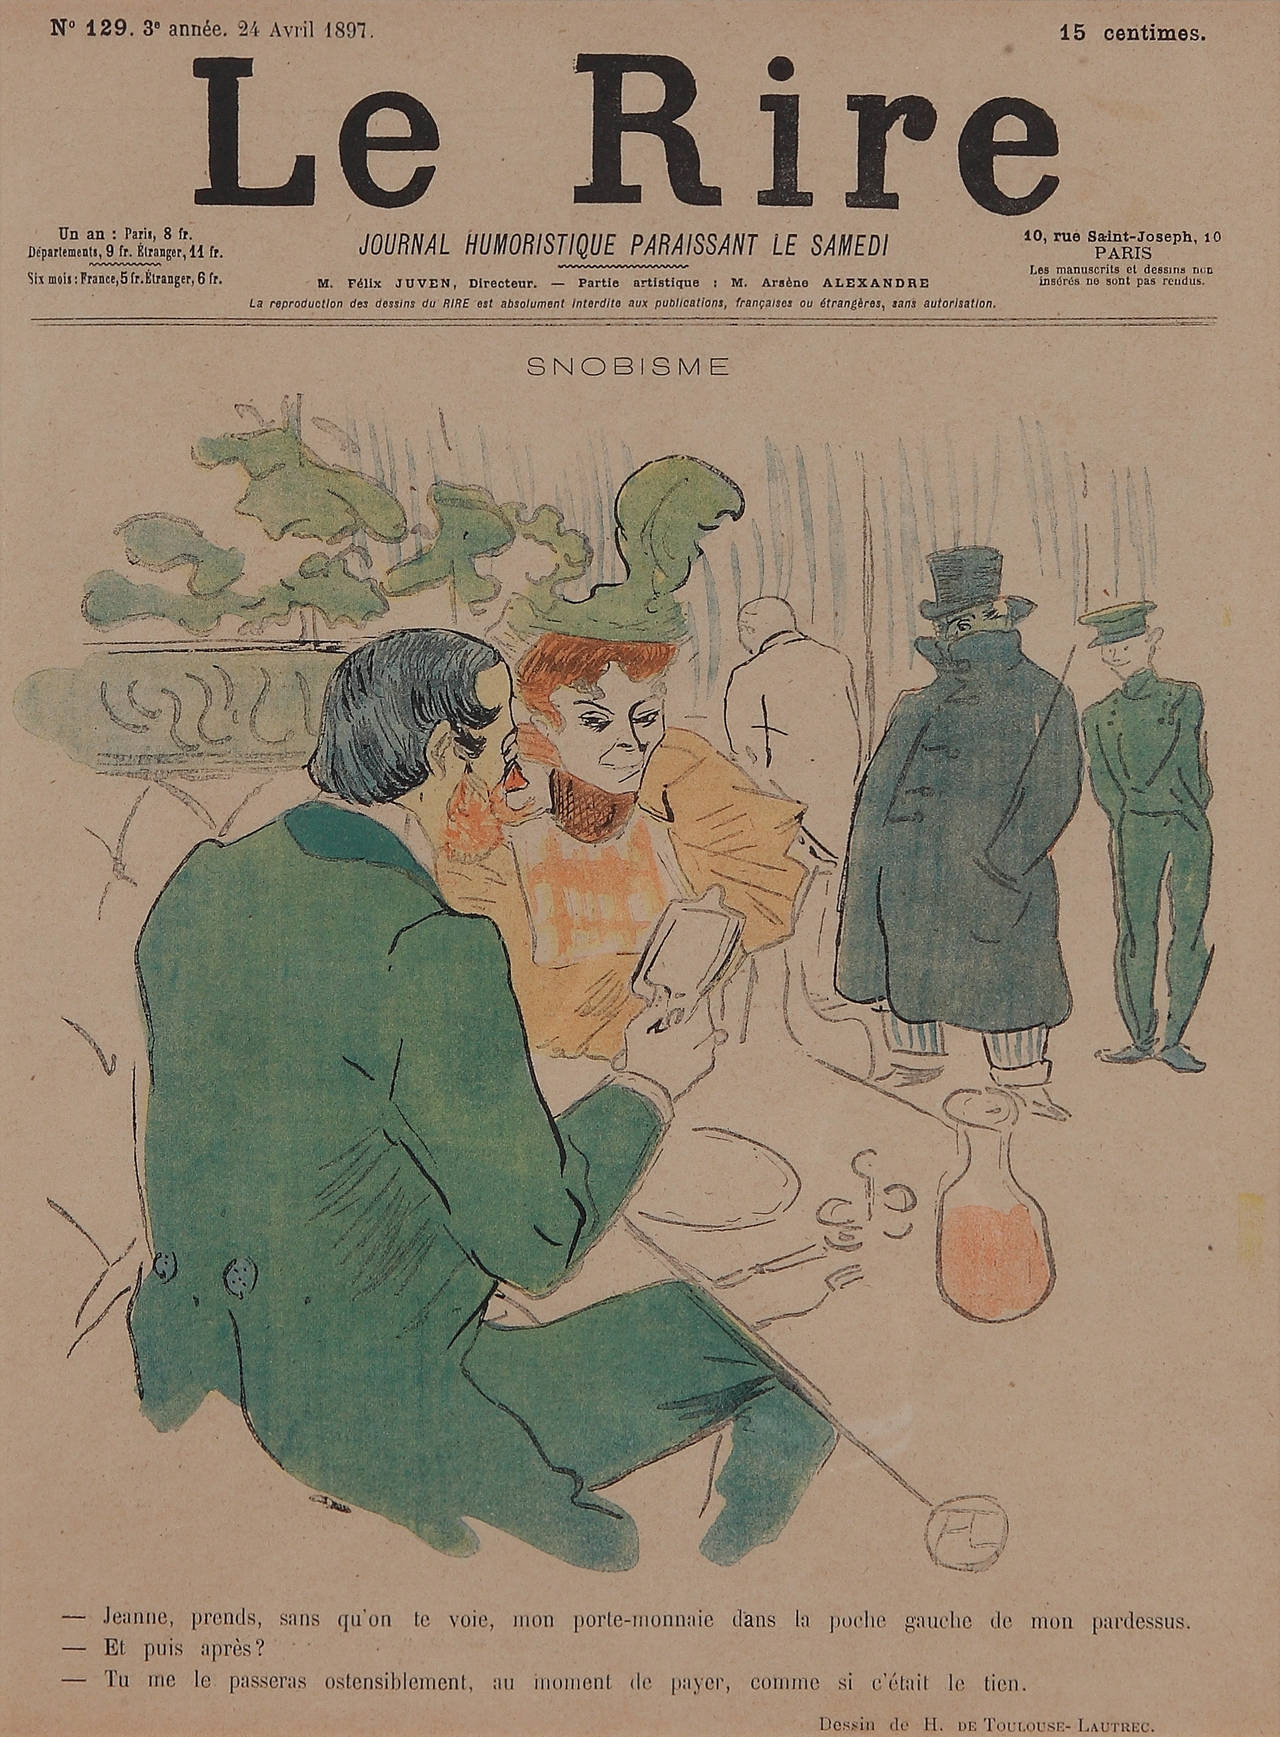 Cover for "Le Rire" - Print by Henri de Toulouse-Lautrec